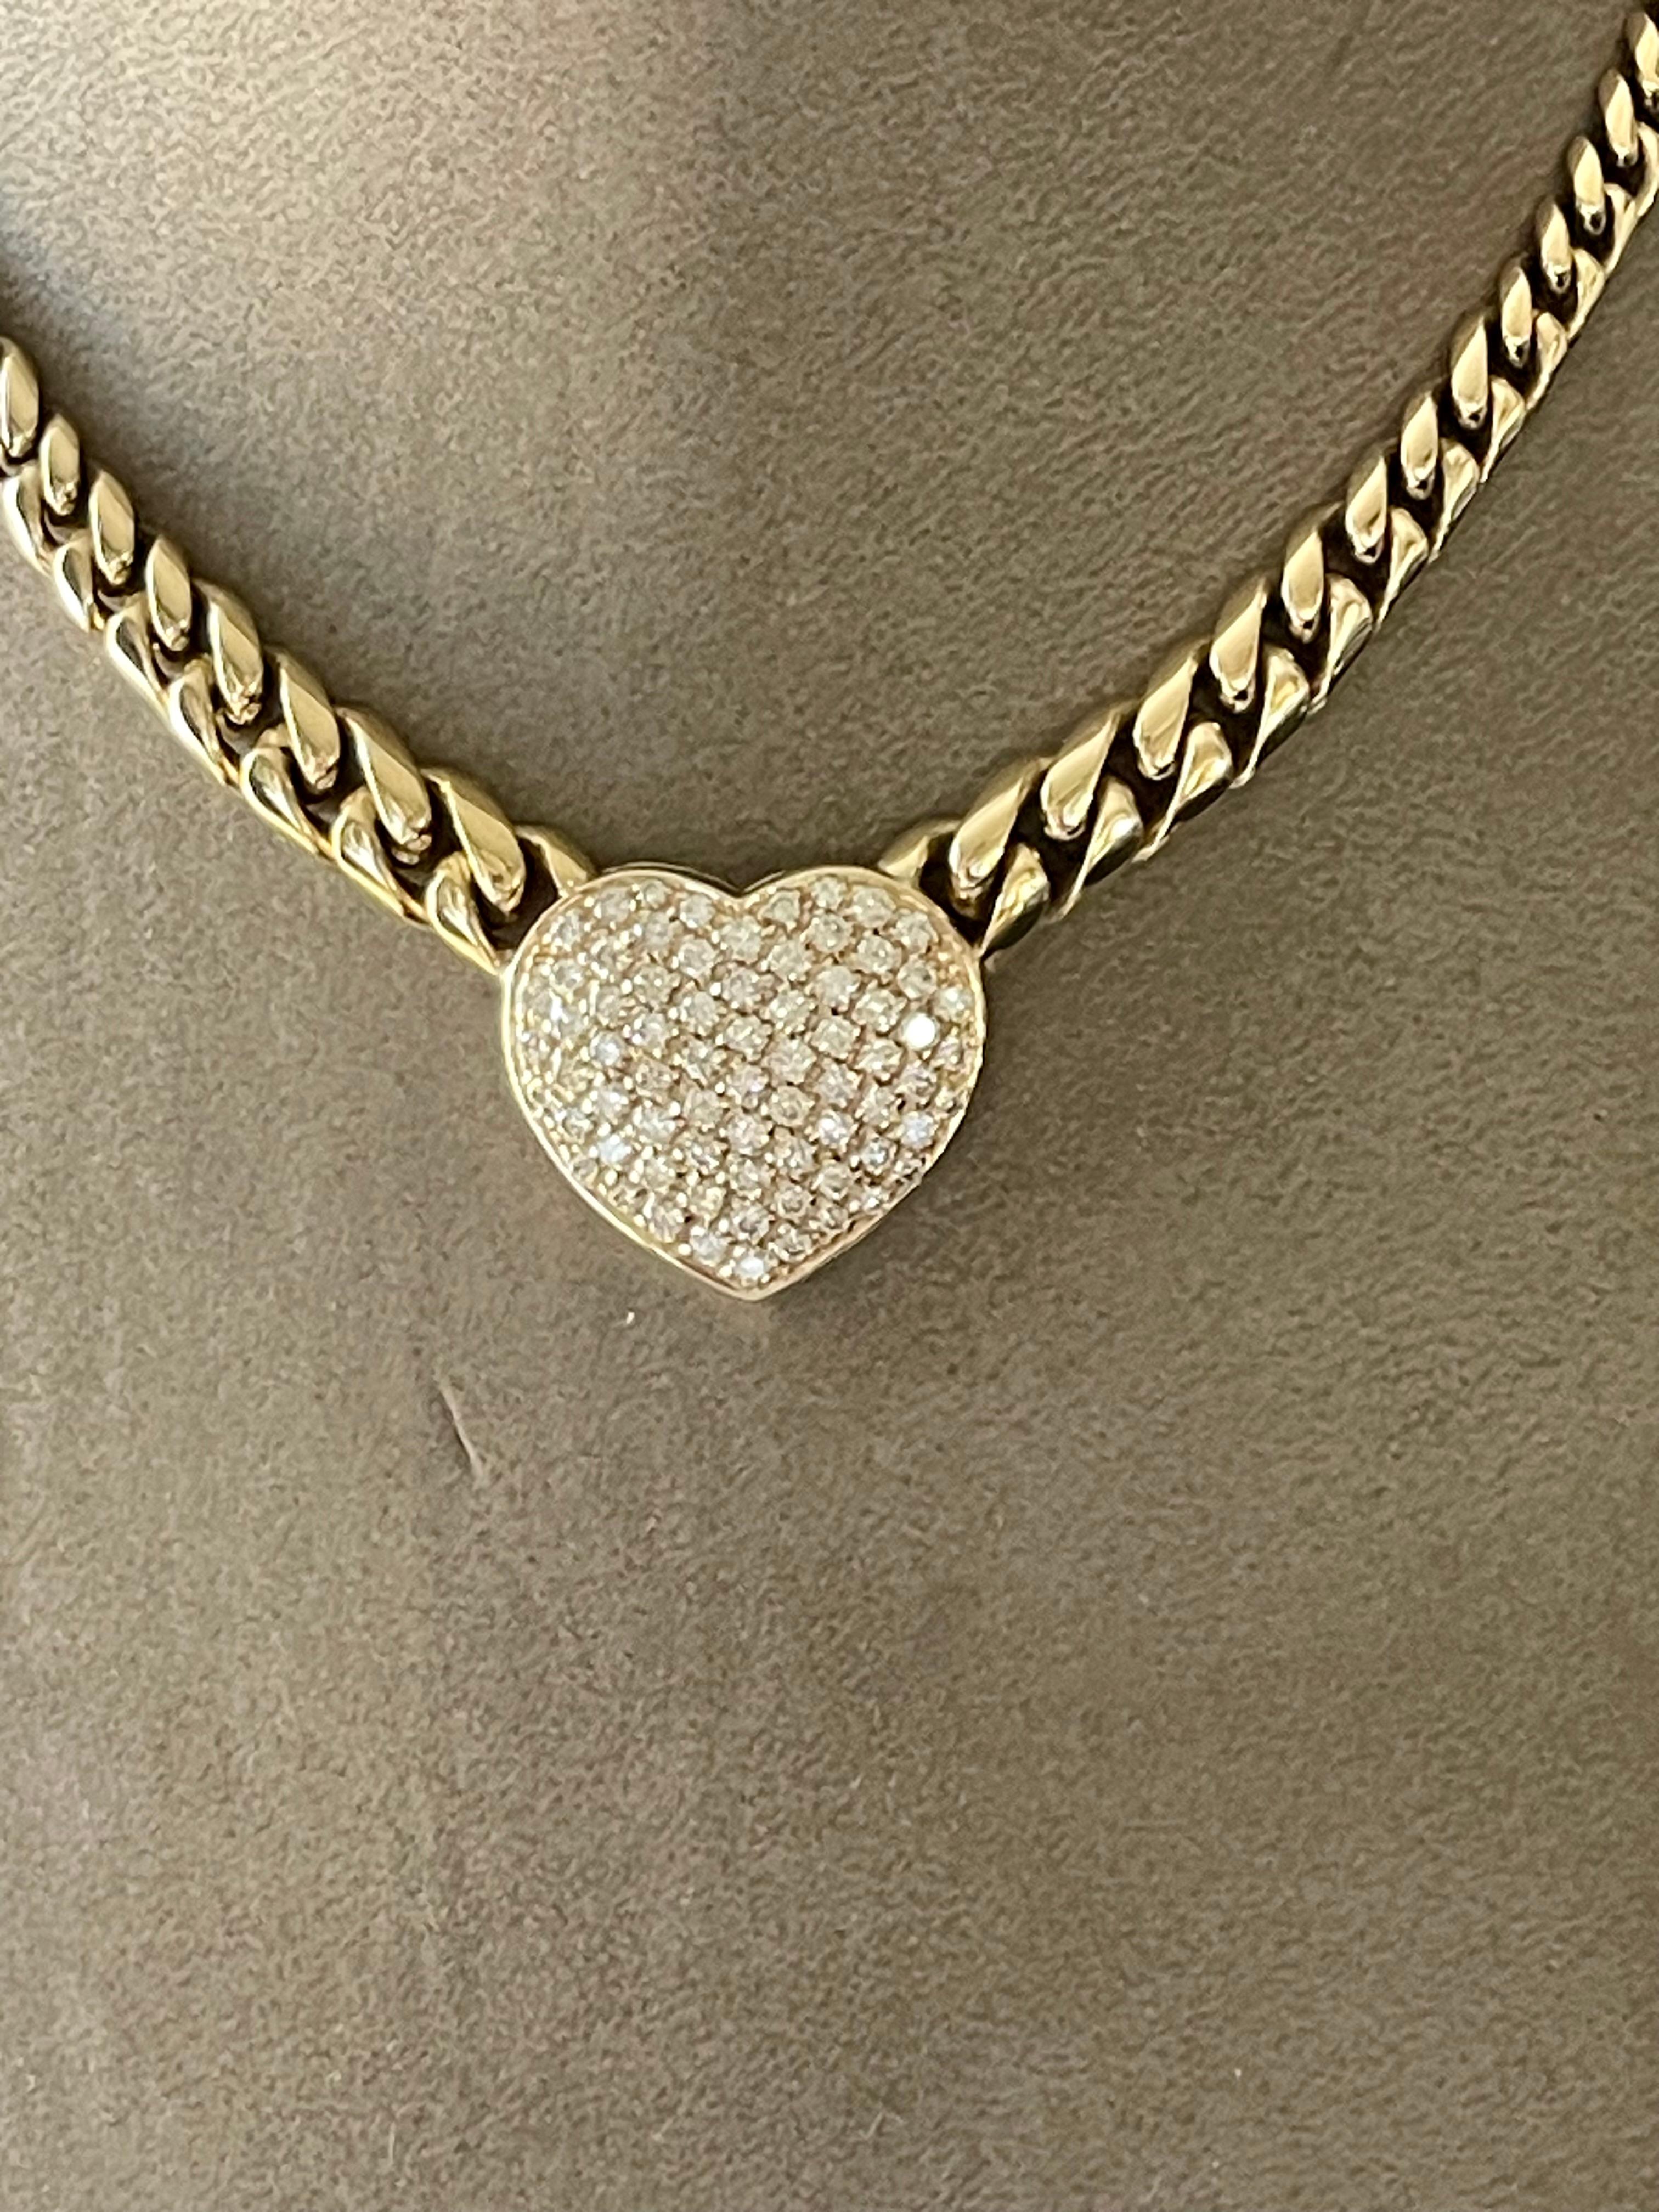 Eine zeitlose und solide 18 K Gelbgold kubanische Link-Halskette mit einem Diamant-Herz-Anhänger in Pave-Set. Diese elegante Halskette besteht aus ca. 2,50 Karat feiner weißer Diamanten im Brillantschliff, Farbe G, Reinheit Vs. 
Länge: 42